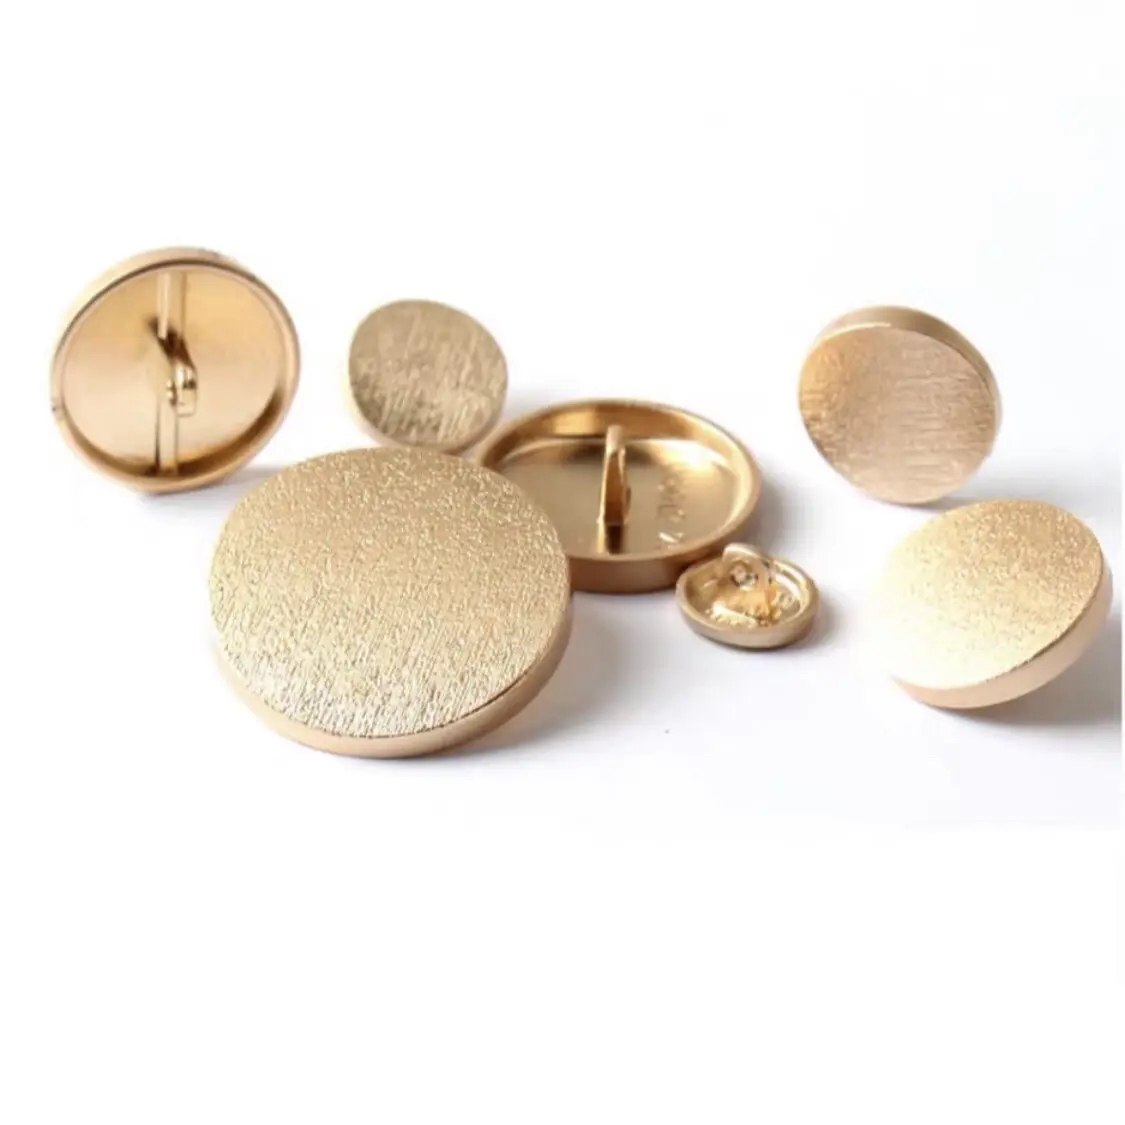 デニム服の手縫い用のカスタムブランドロゴ丸型の高品質刻印ゴールドメタルドームシャンクボタン